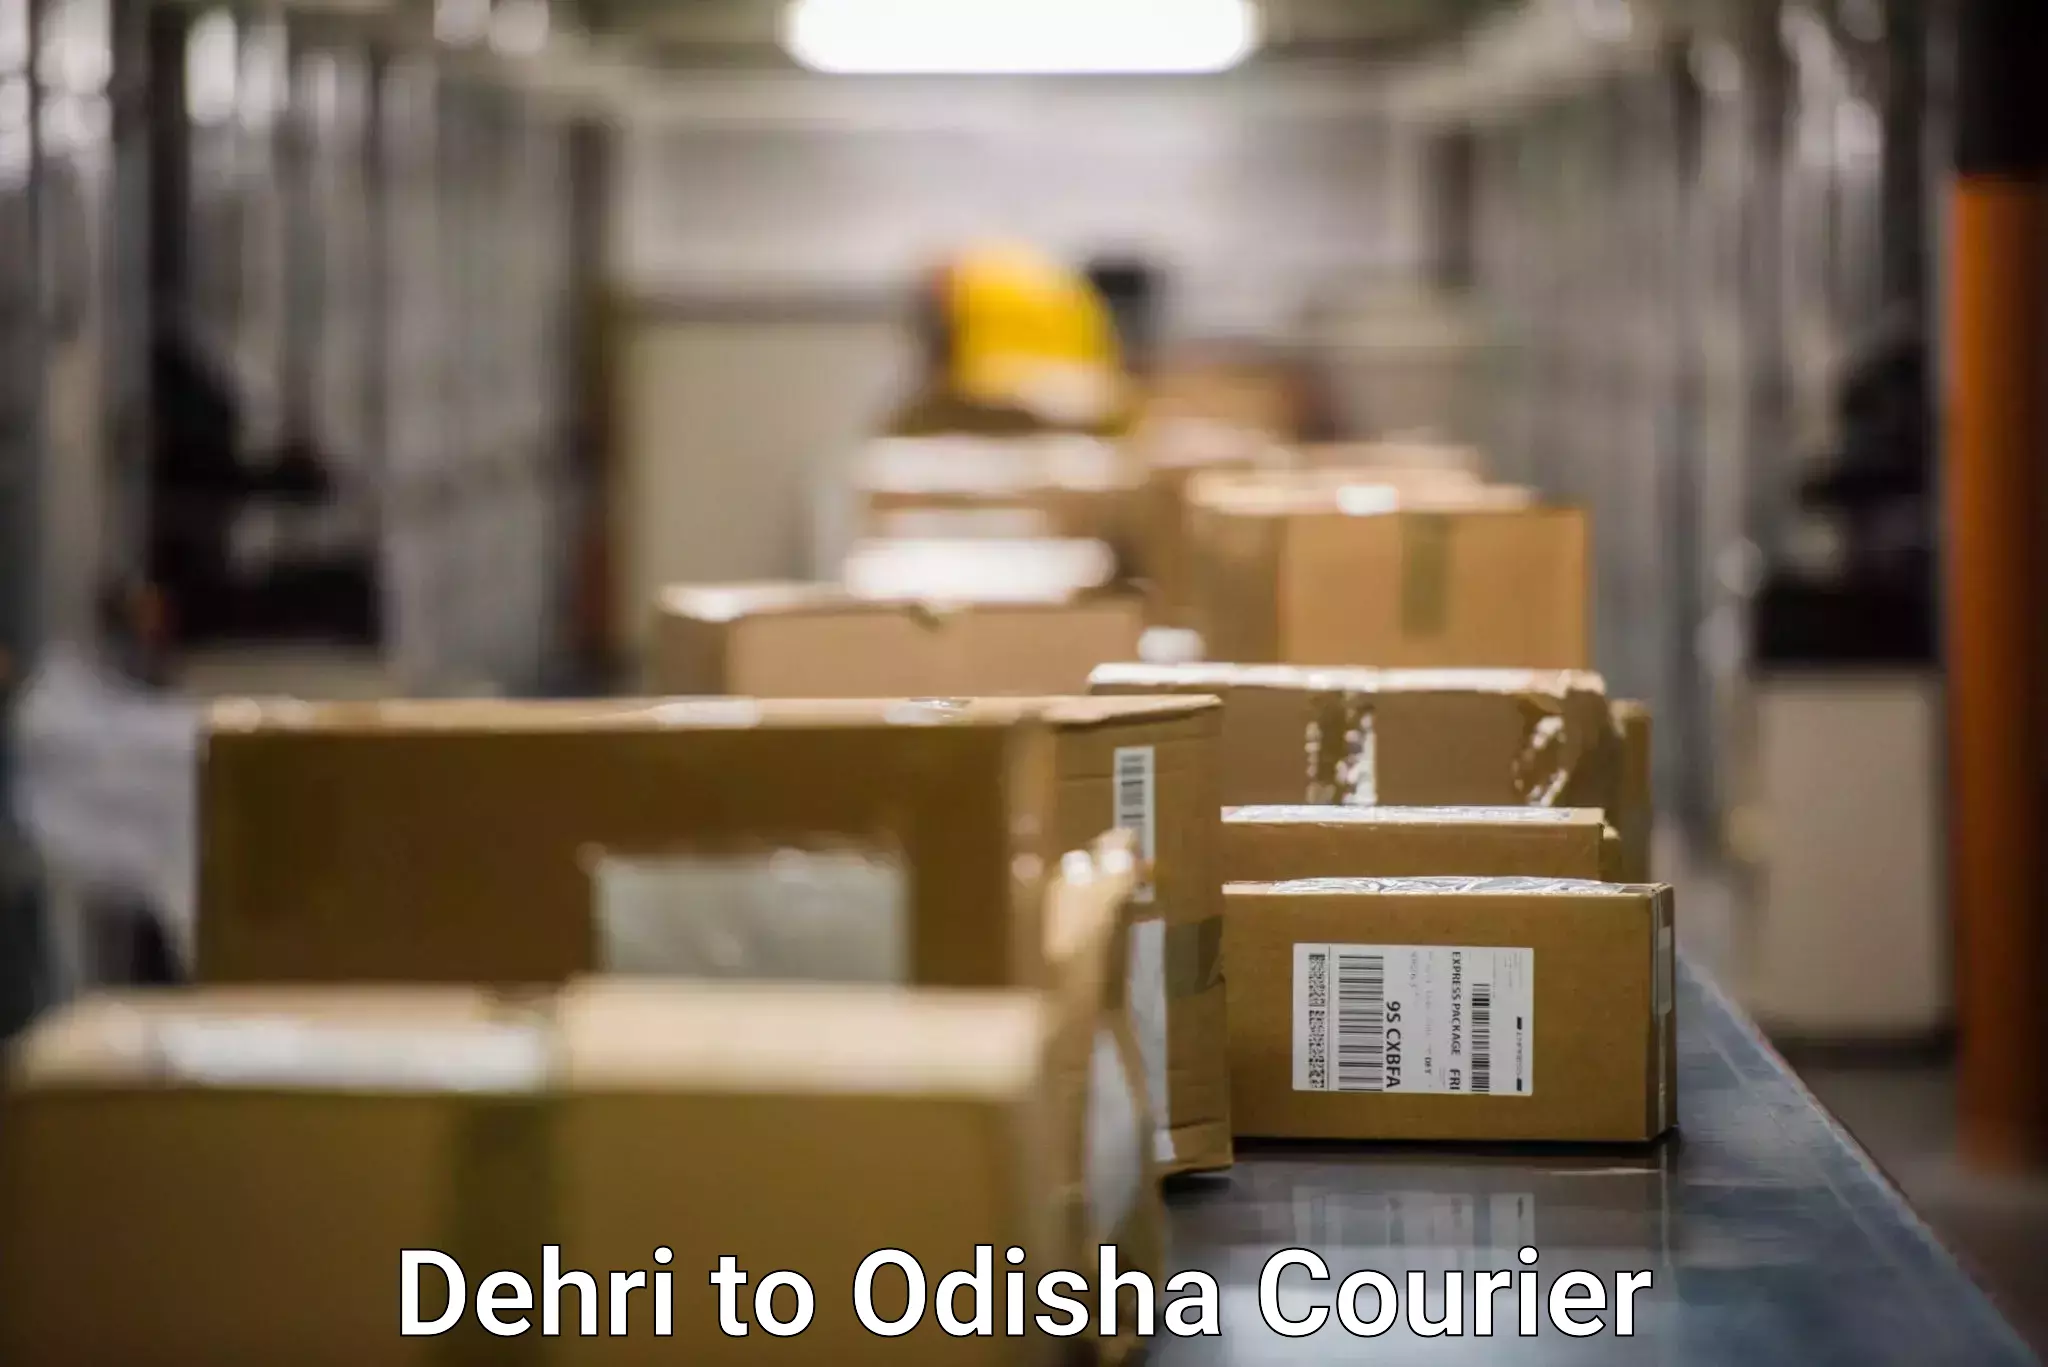 User-friendly delivery service Dehri to Odisha